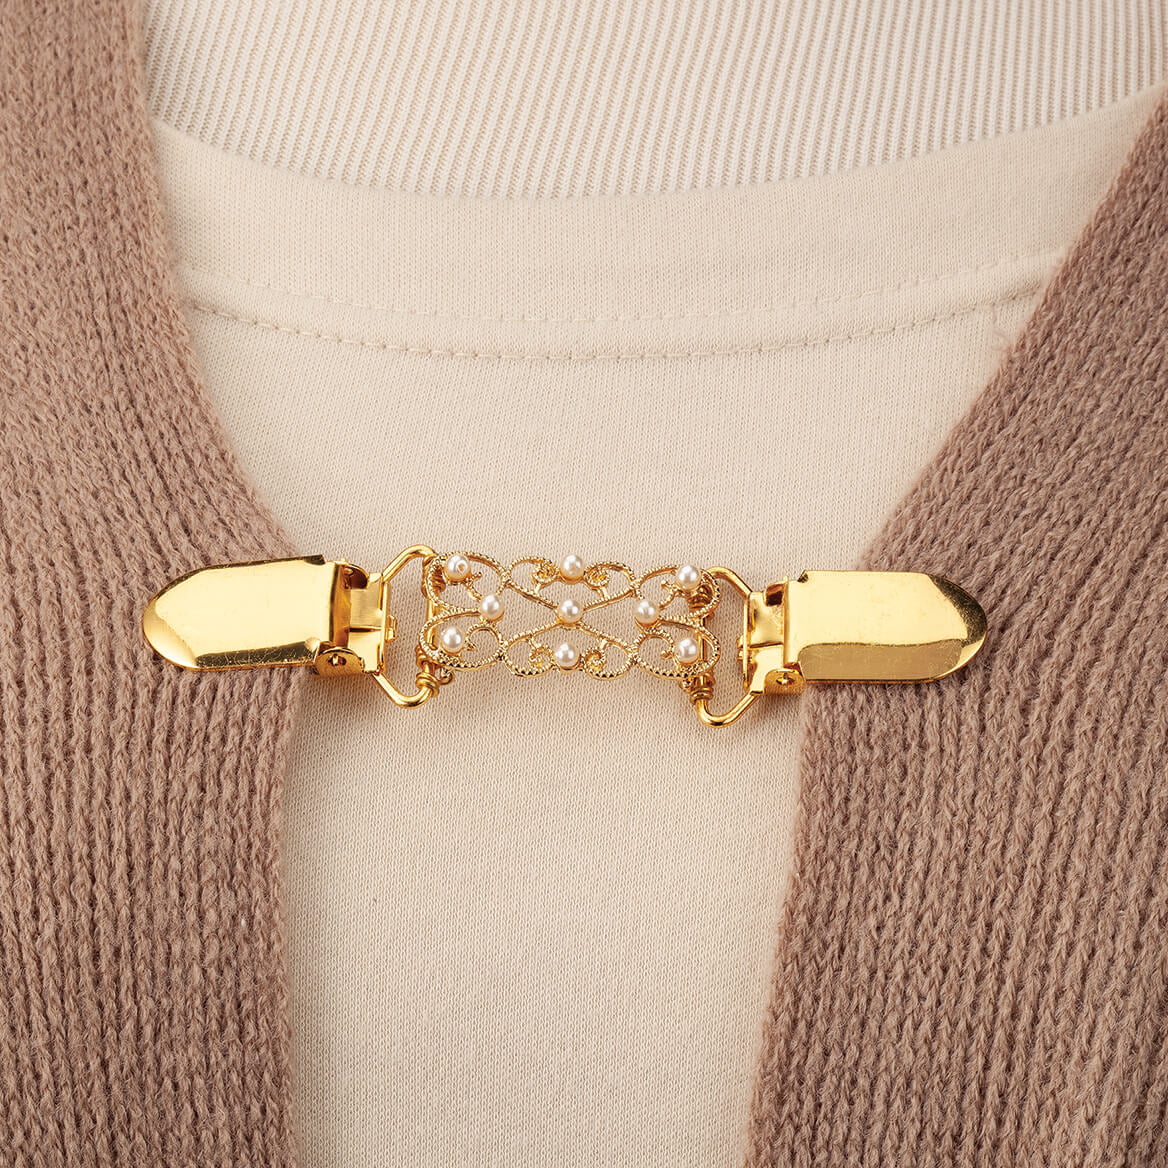 Decorative Goldtone Sweater Clasp